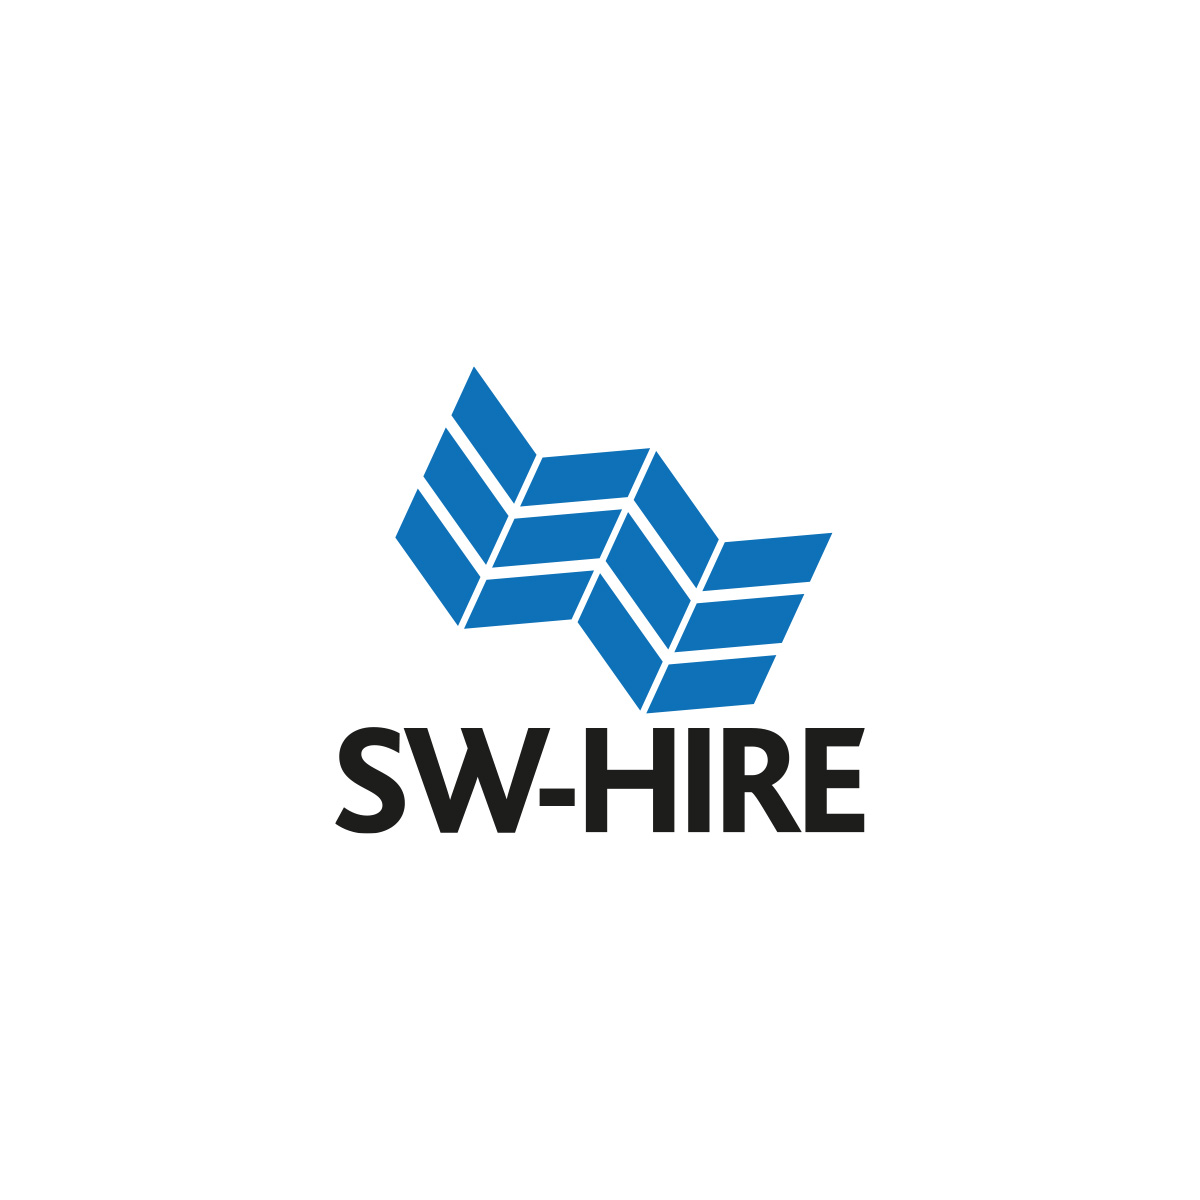 www.sw-hire.co.uk